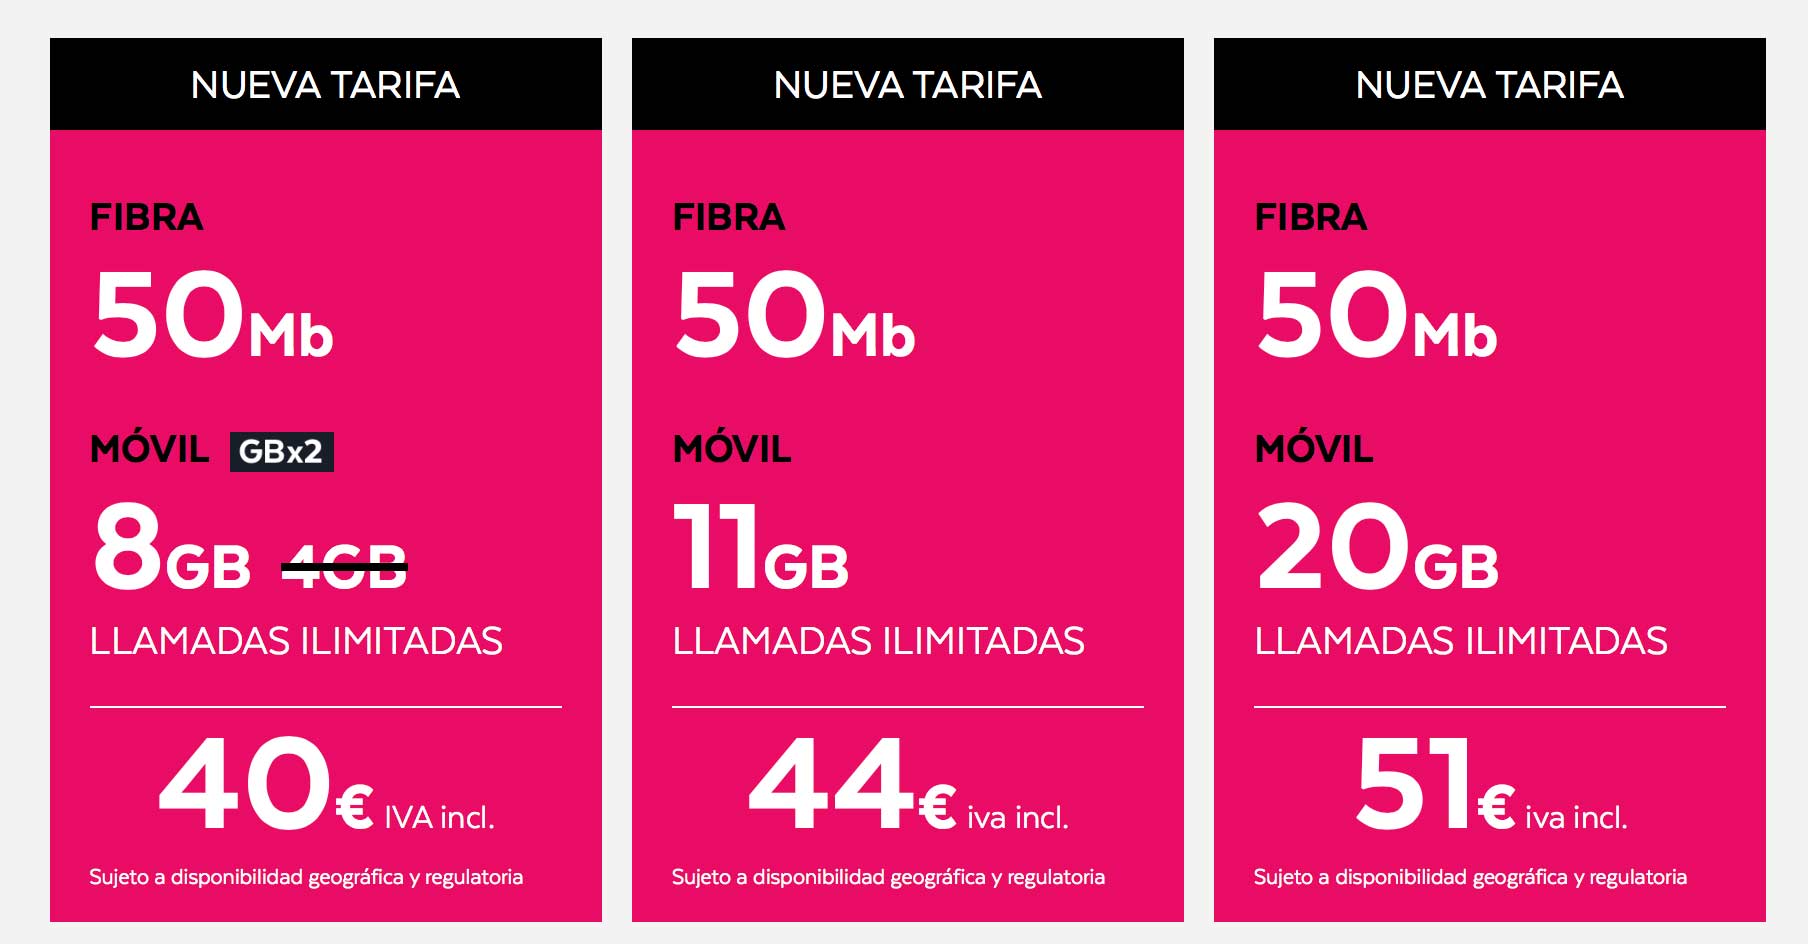 Estas son las nuevas tarifas de fibra y móvil de Tuenti